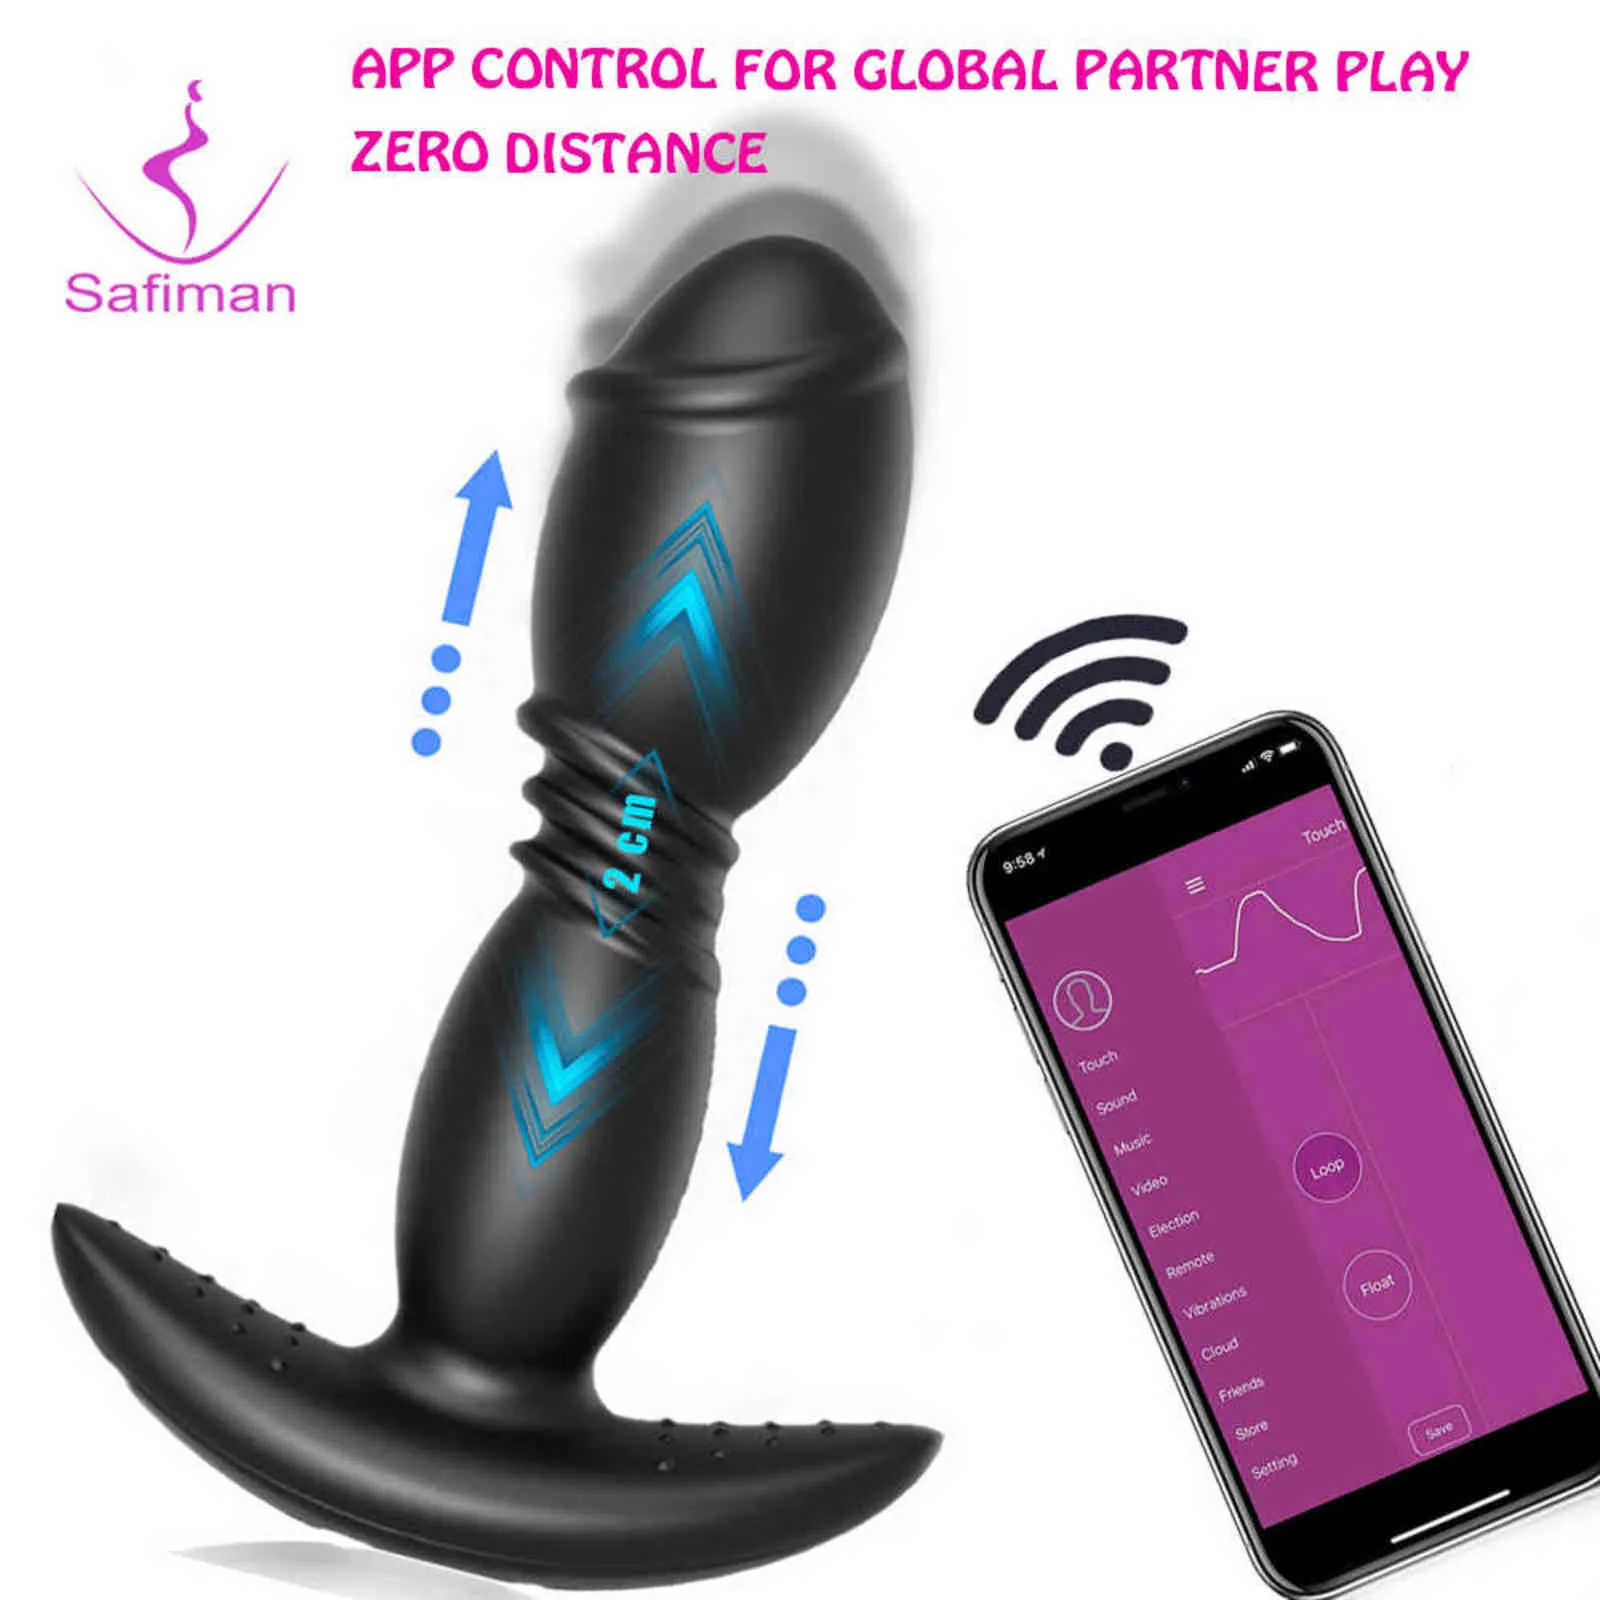 NXY Anal Toys Thrusting Vibrator Seksspeeltjes voor vrouwen orgasme Masturbator -app Remote Control Bluetooth Big Butt Plug Prostate Erotisch 4680761